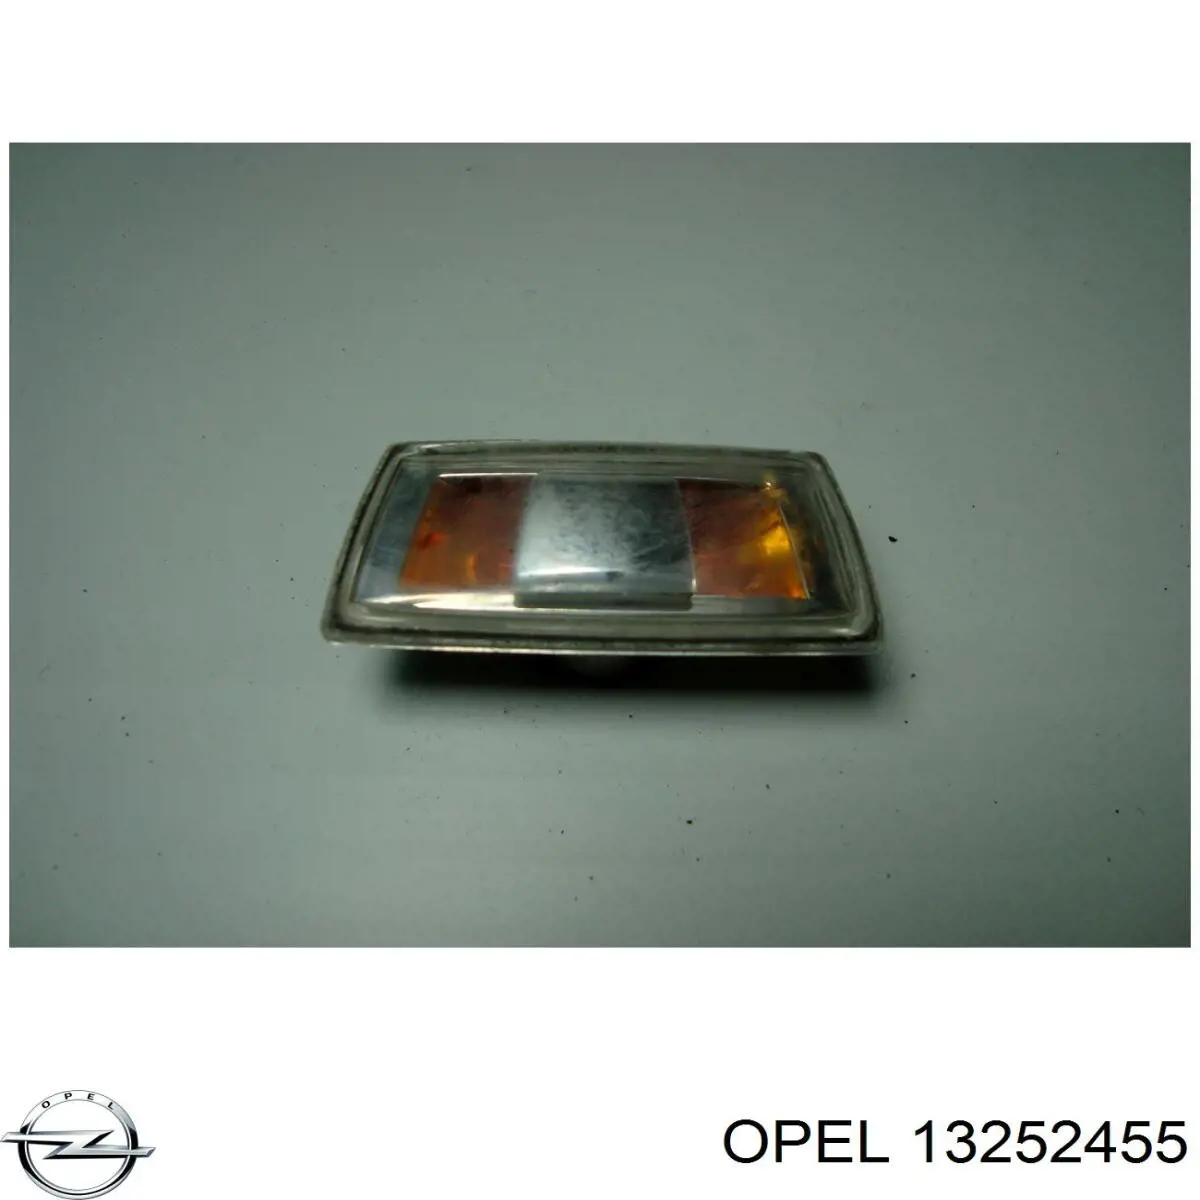 13252455 Opel luz intermitente guardabarros derecho